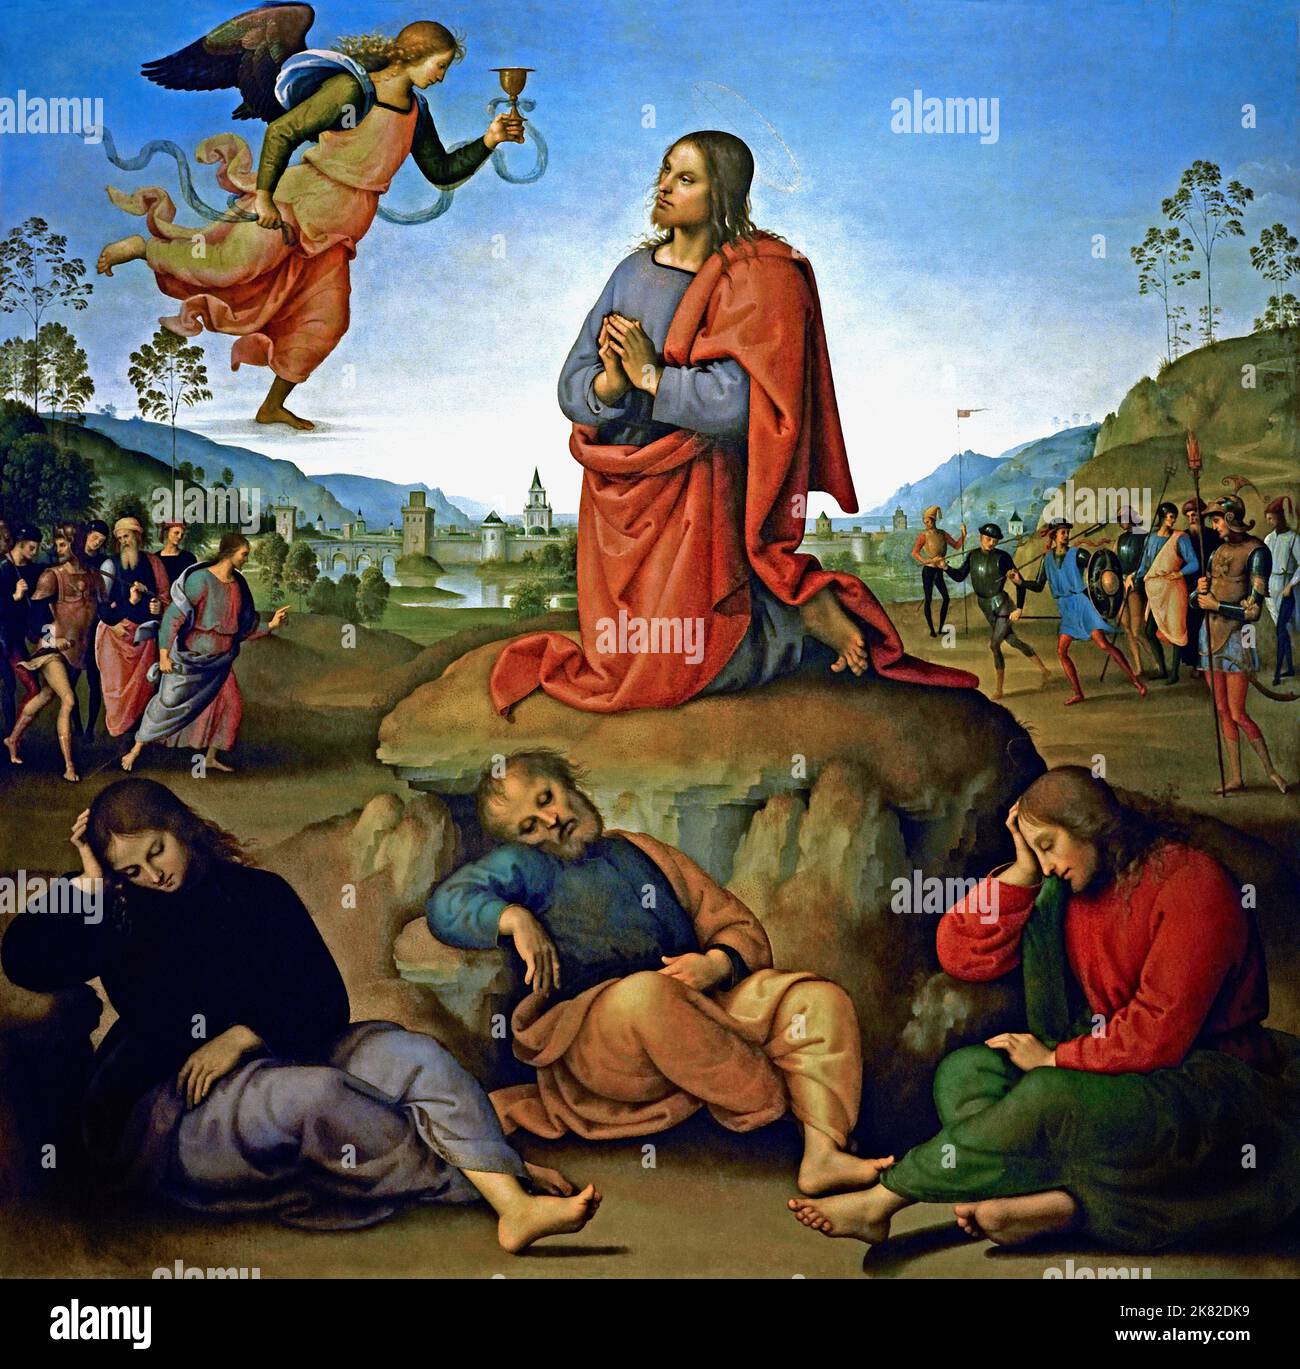 Er Agonie im Garten 1492 Pietro Perugino 1446/1452 – 1523 geboren Pietro Vannucci, italienischer Renaissance-Maler der umbrischen Schule, Italien (Christus wird in der Mitte der Tafel über einem klaren Himmel dargestellt, kniet im Garten Gethsemane und empfängt von einem Engel einen göttlichen Kelch. Seine Figur bildet ein Dreieck mit den drei schlafenden Aposteln unten (von links: Johannes, Petrus und Jakobus); das Dreieck ist durch die symmetrische Linie der Hügel mit den Seiten des Gemäldes verbunden. Hinter Jesus liegt eine Seenlandschaft, ein typisches Element der damaligen italienischen Malerei, mit einer befestigten Stadt. Stockfoto